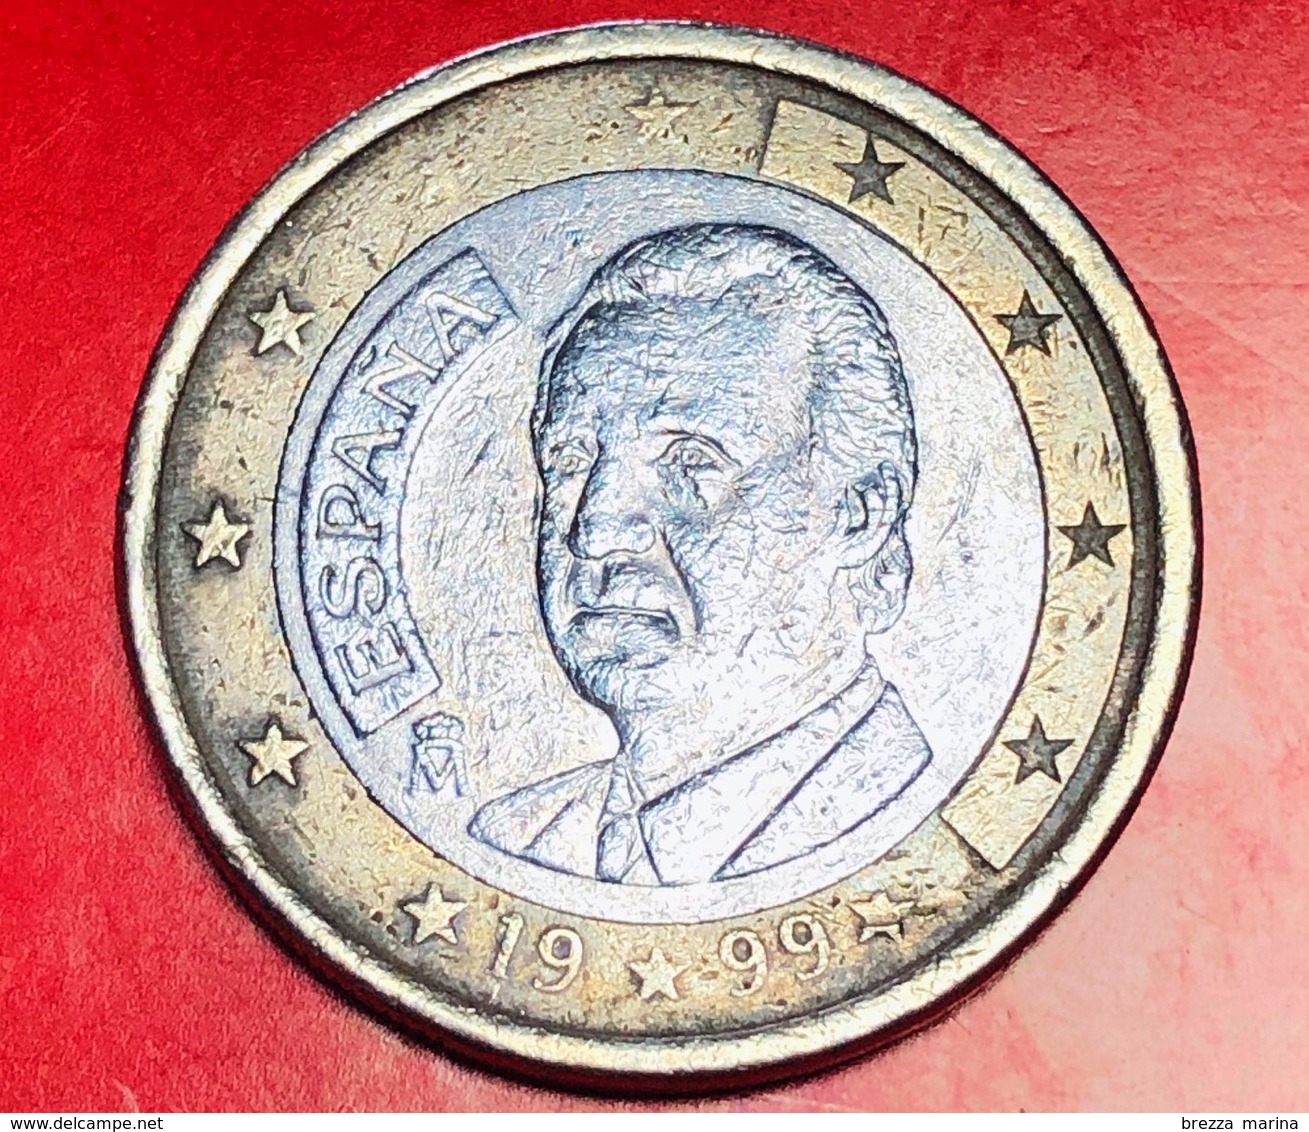 SPAGNA - 1999 - Moneta - Ritratto Di Re Juan Carlos I Di Borbone - Euro - 1.00 - Slovenia